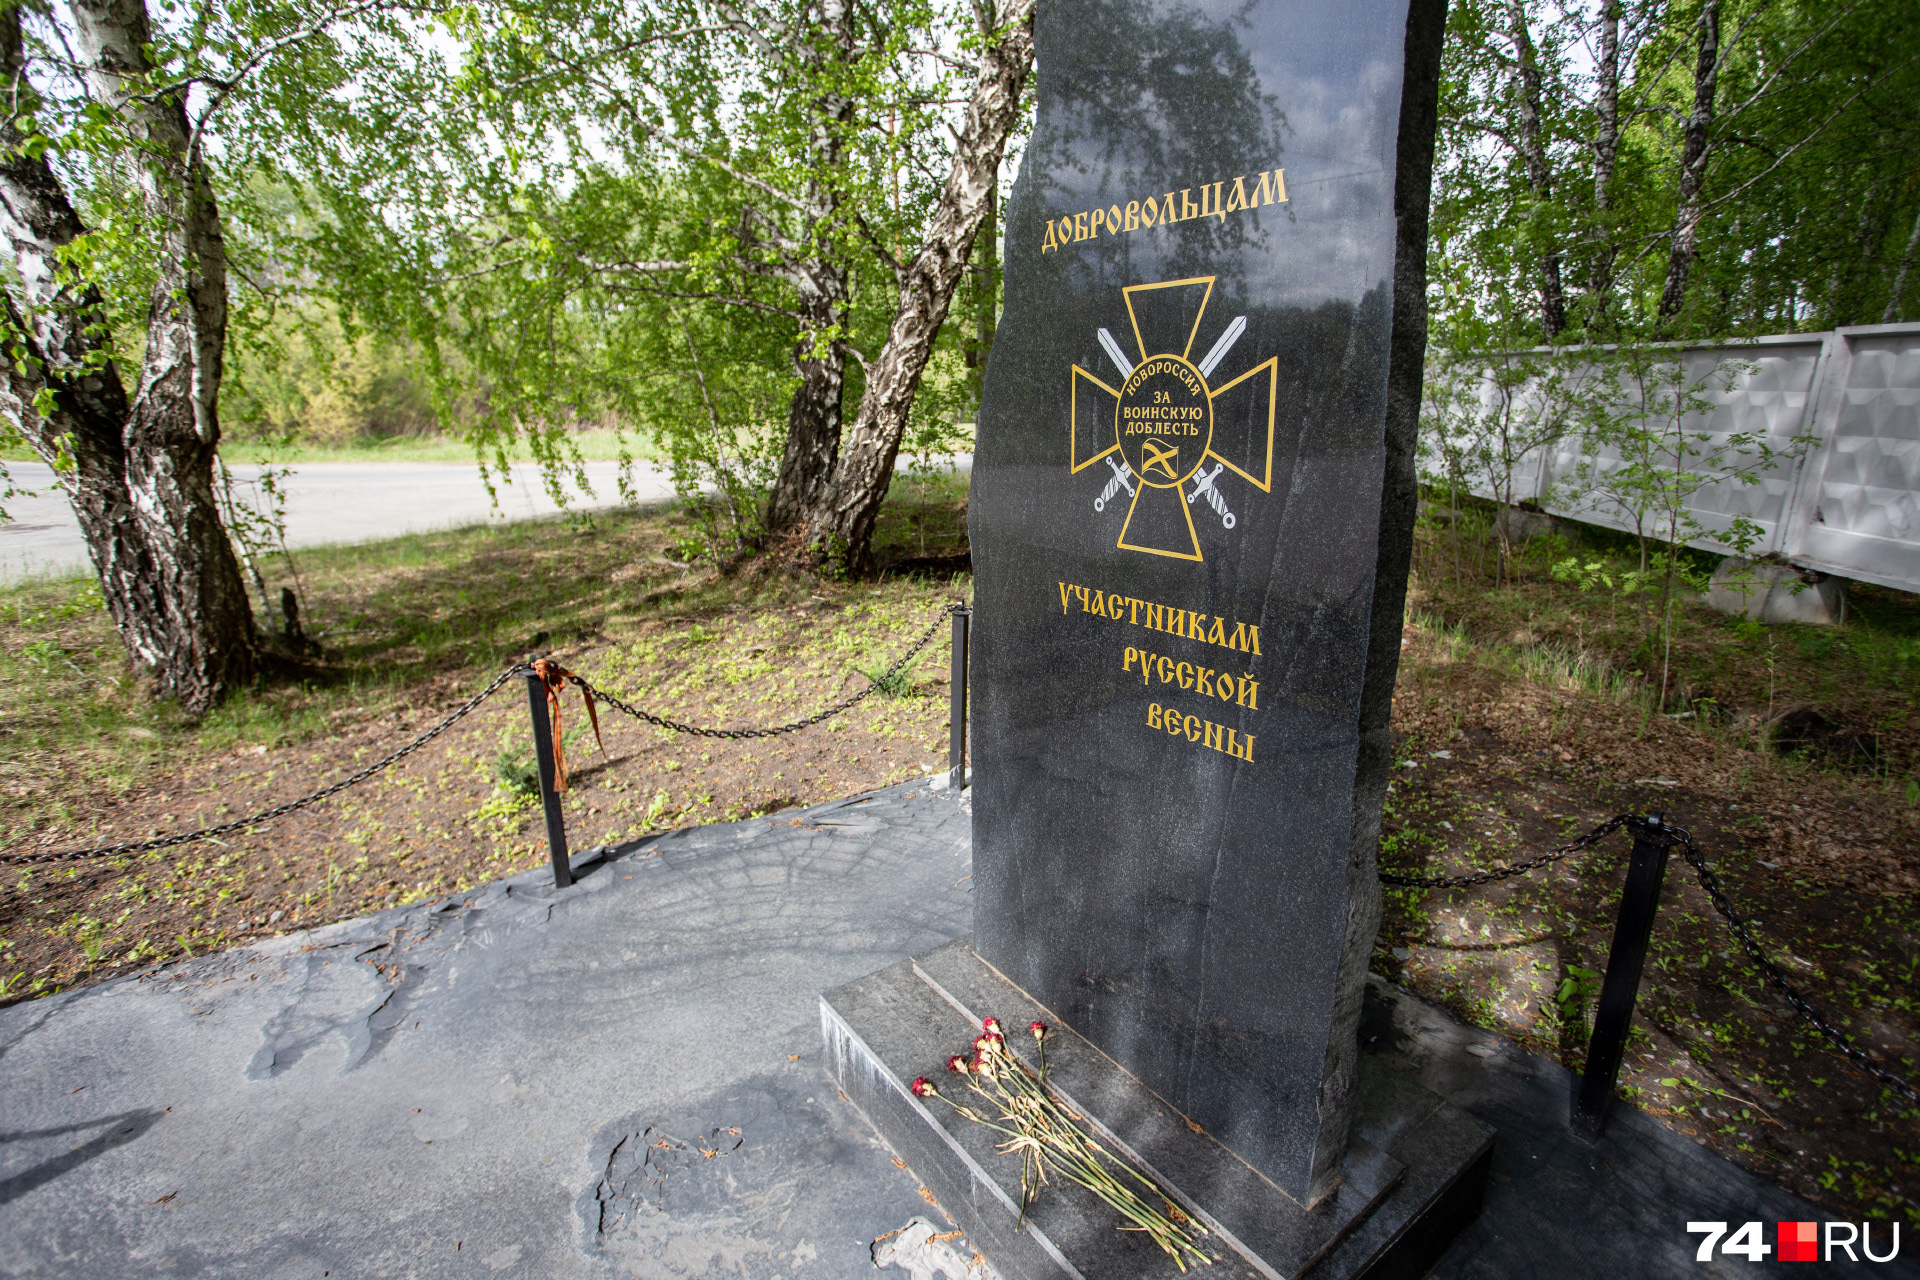 Памятник посвящен участникам событий 2014 года, когда вспыхнули протесты на Юго-Востоке Украины